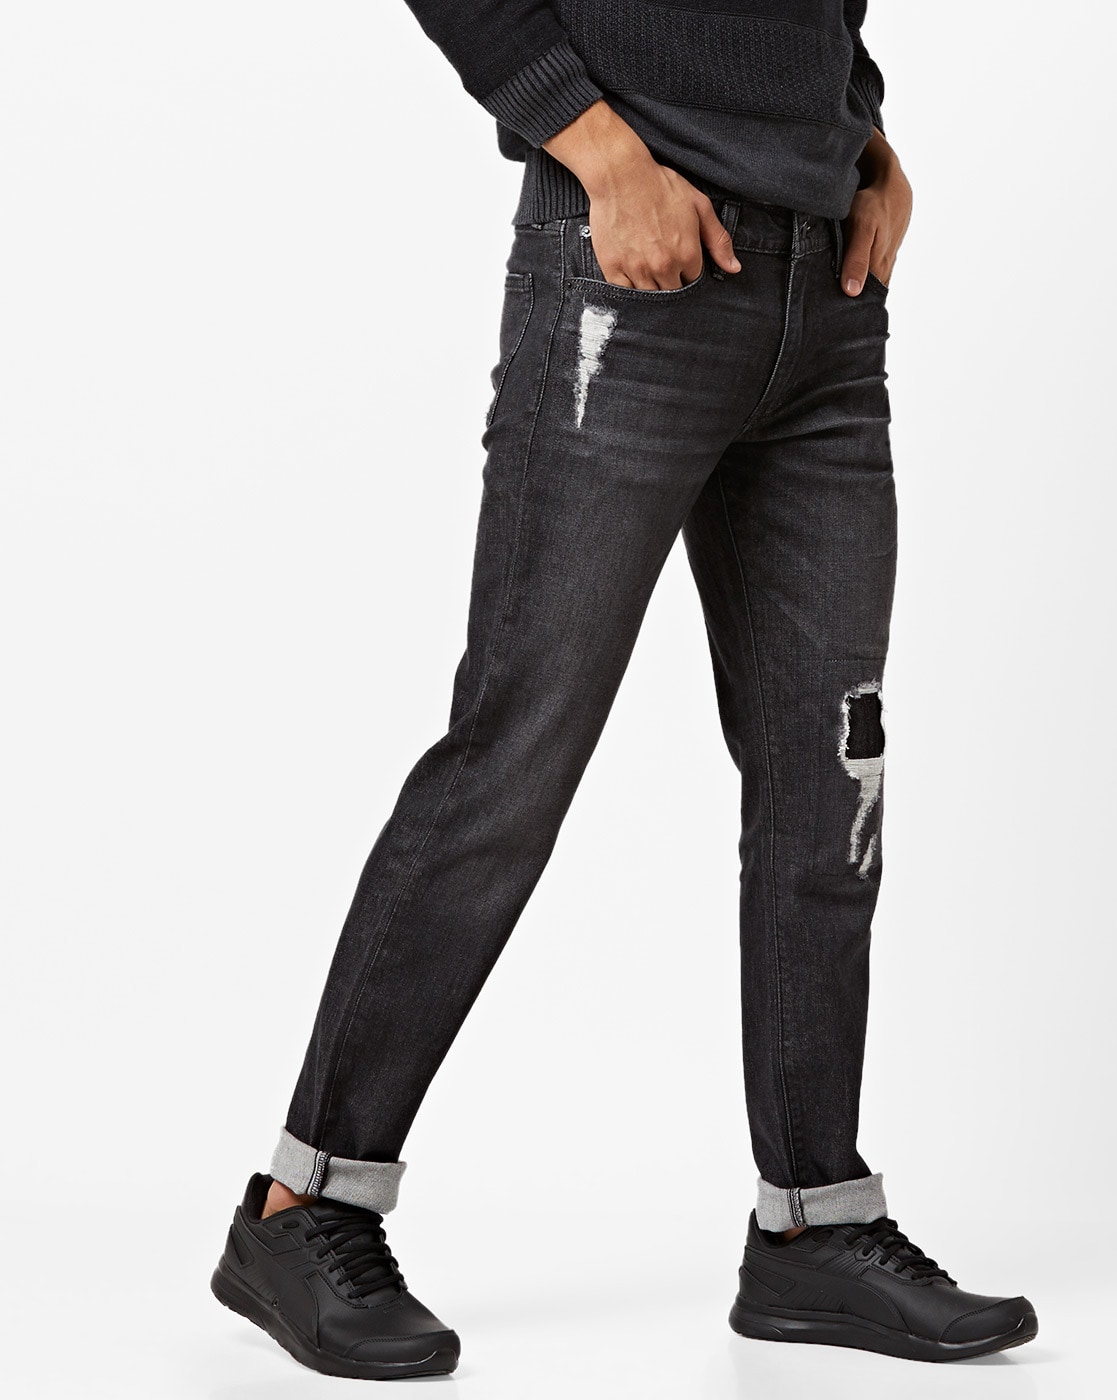 Buy now mens black slim fit clean look Jeans  Wrogn by virat kohli   WEJN1220